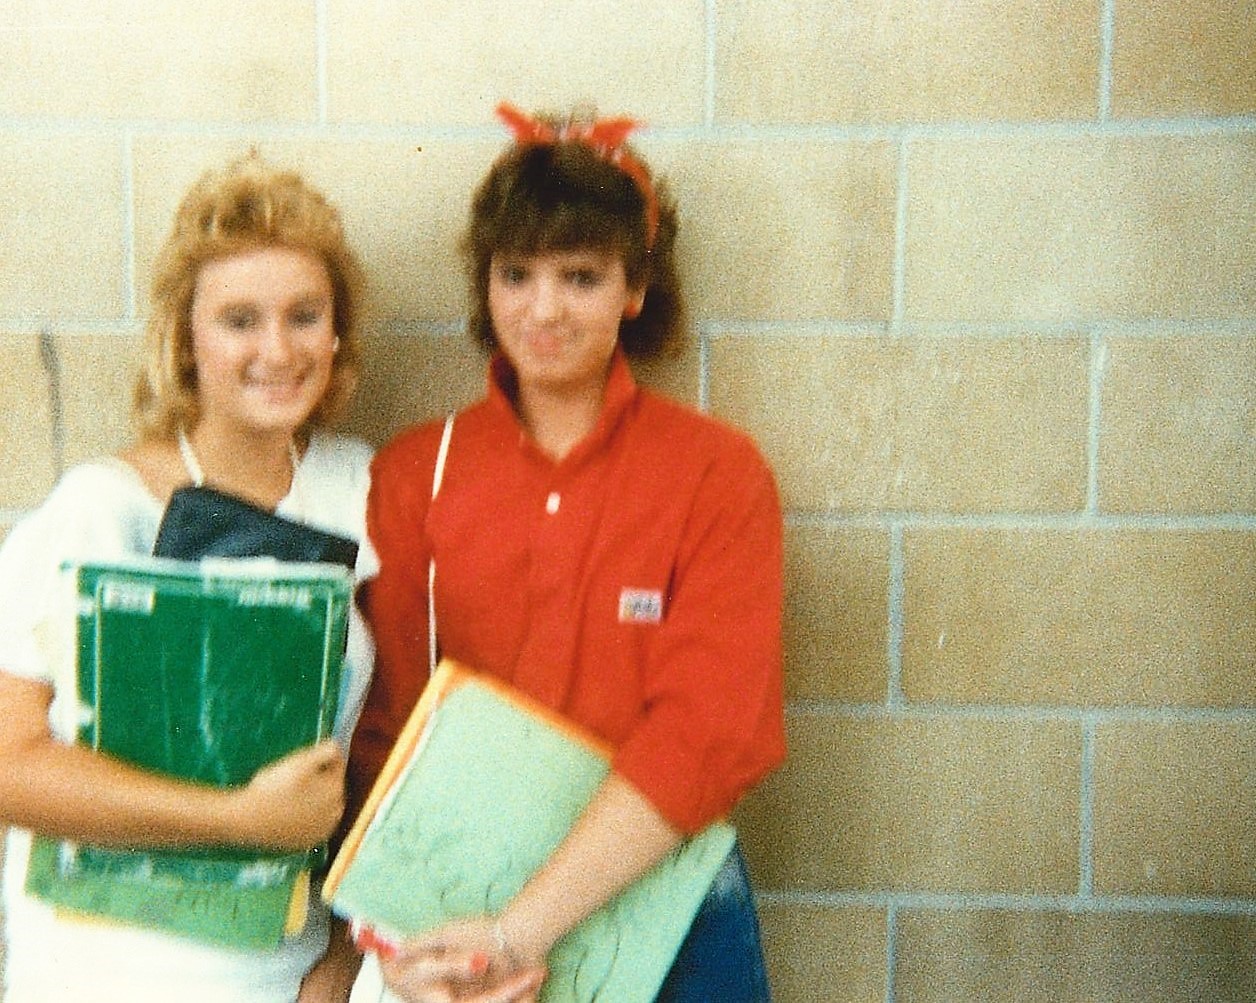 Tampa Florida 1980s